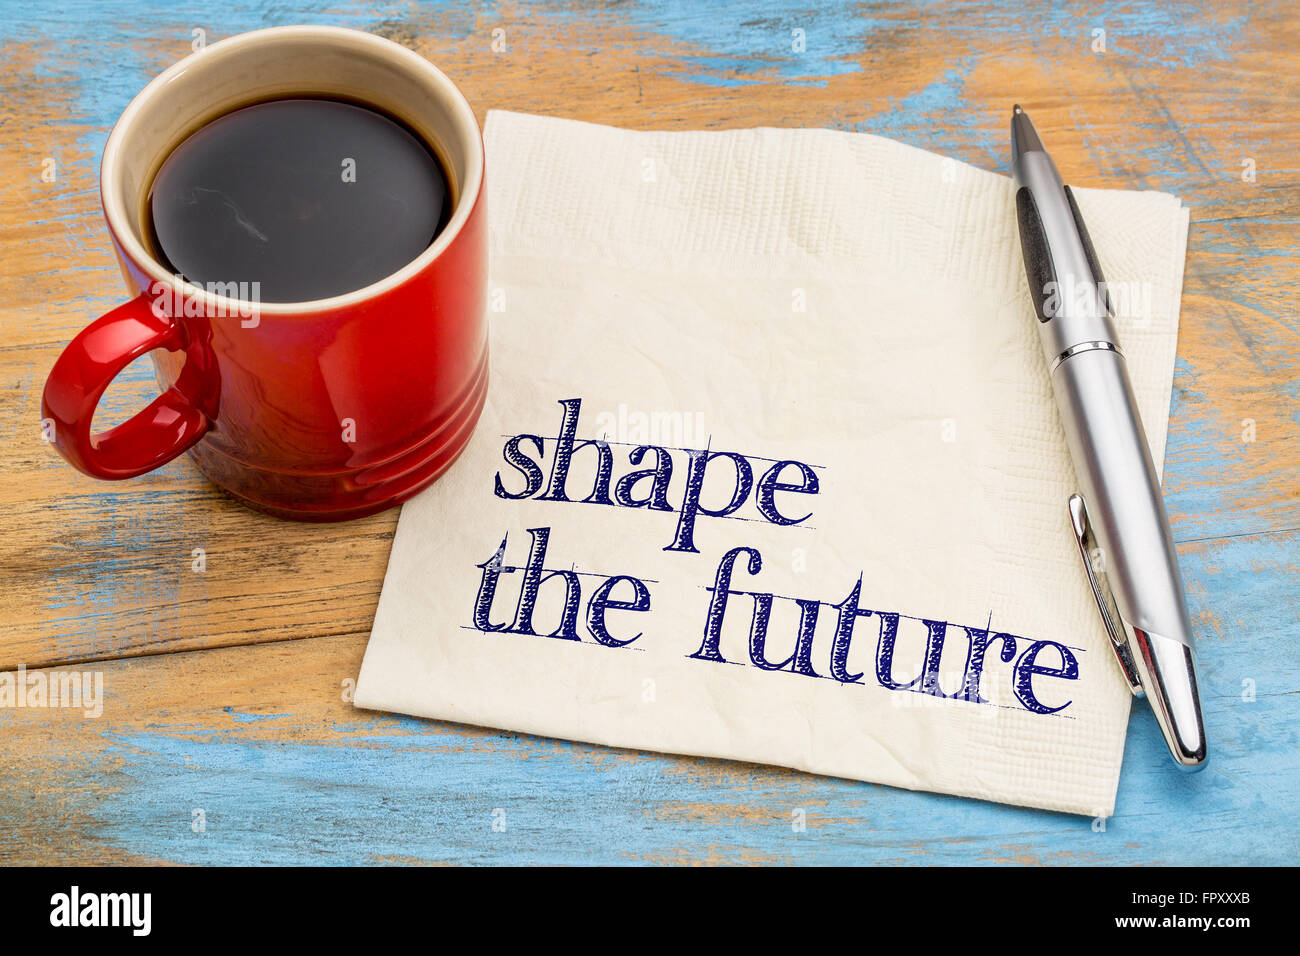 Façonner l'avenir - expression de motivation sur une serviette avec une tasse de café Banque D'Images